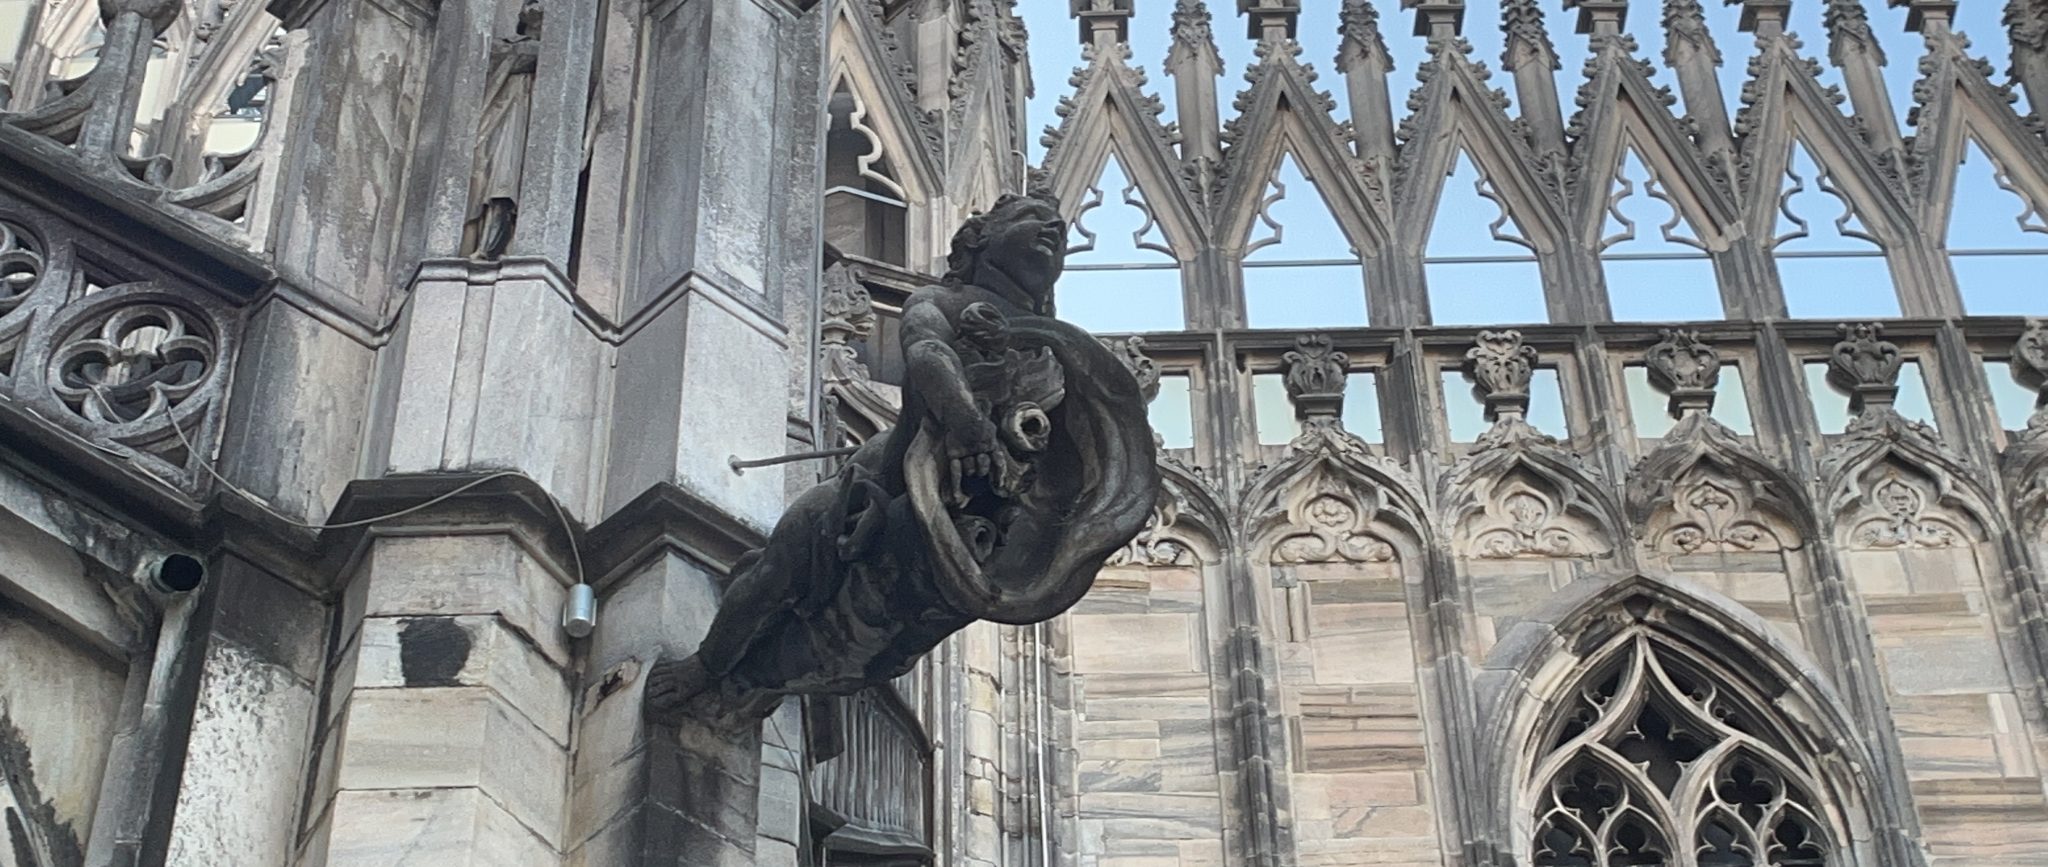 Angelic roof drain, Duomo de Milano, Milan, italy, cathedral